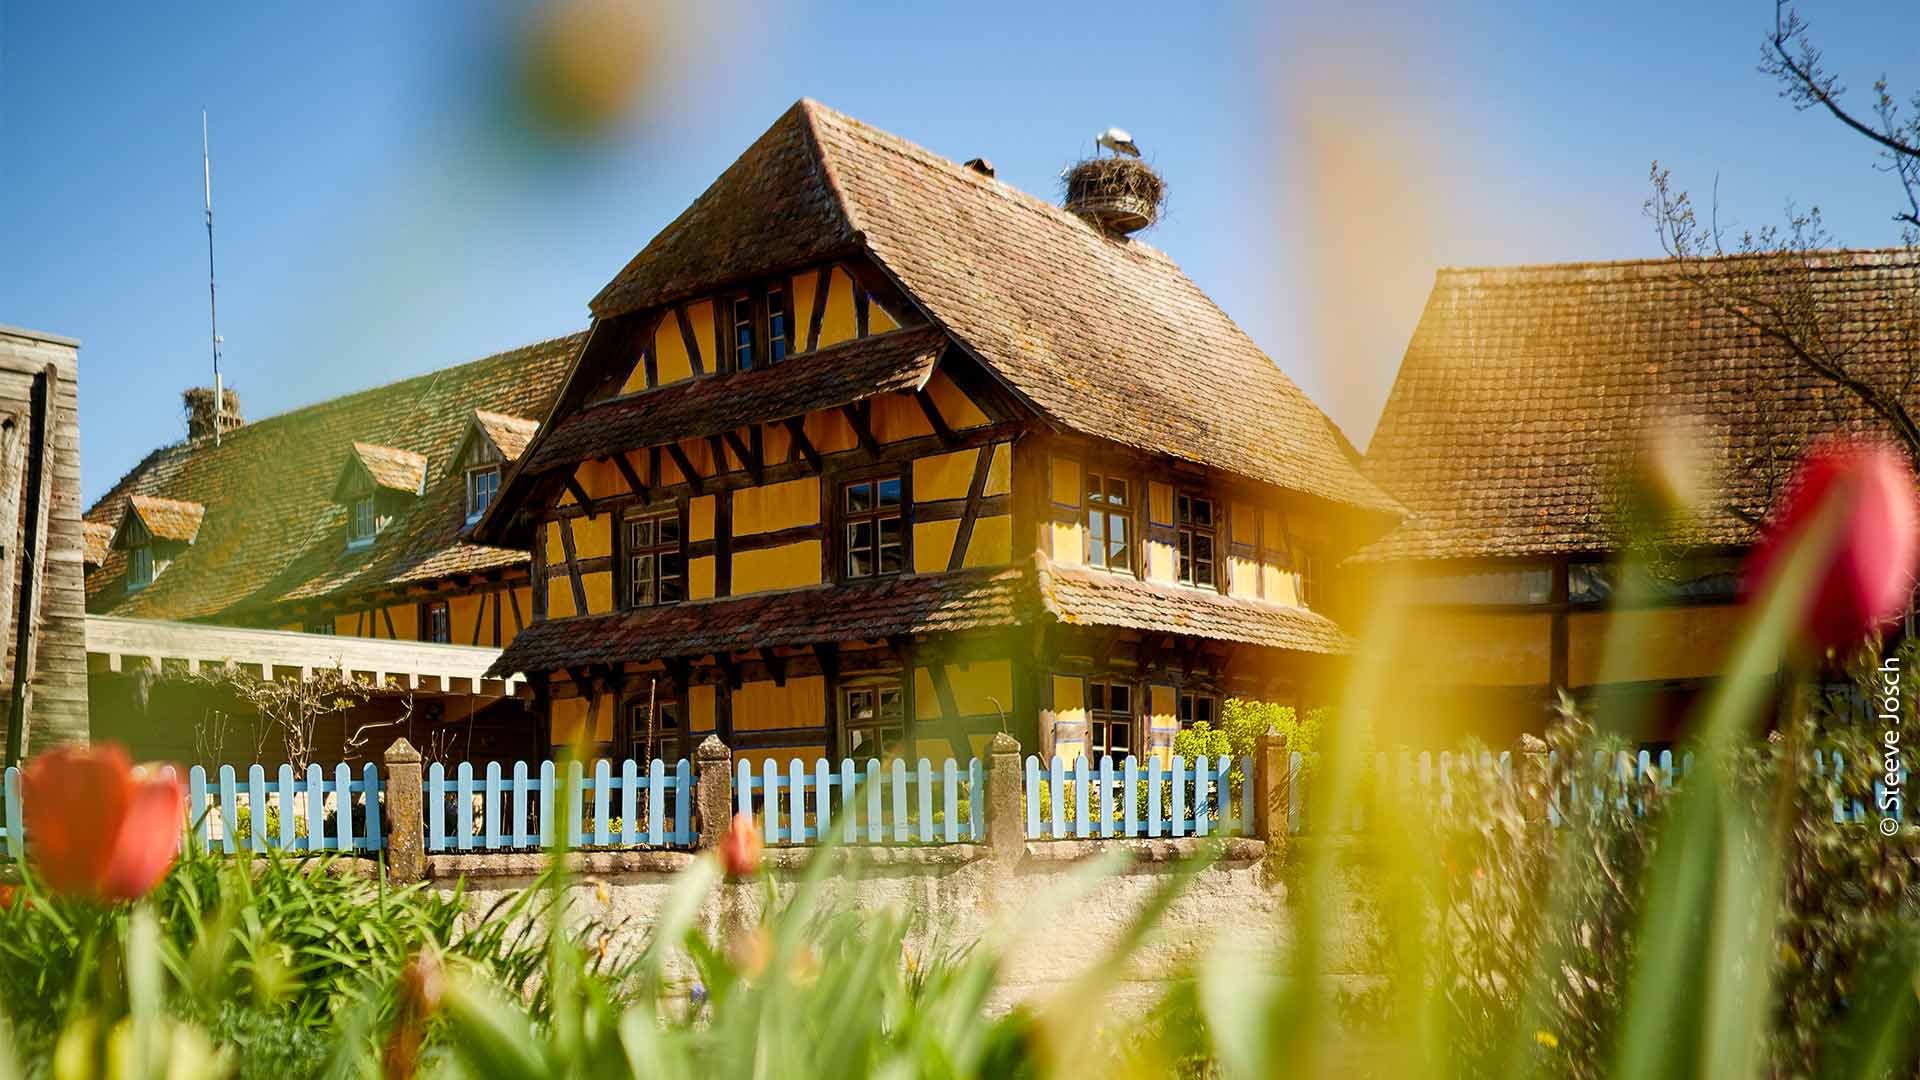 Maison à colombages - Écomusée d'Alsace